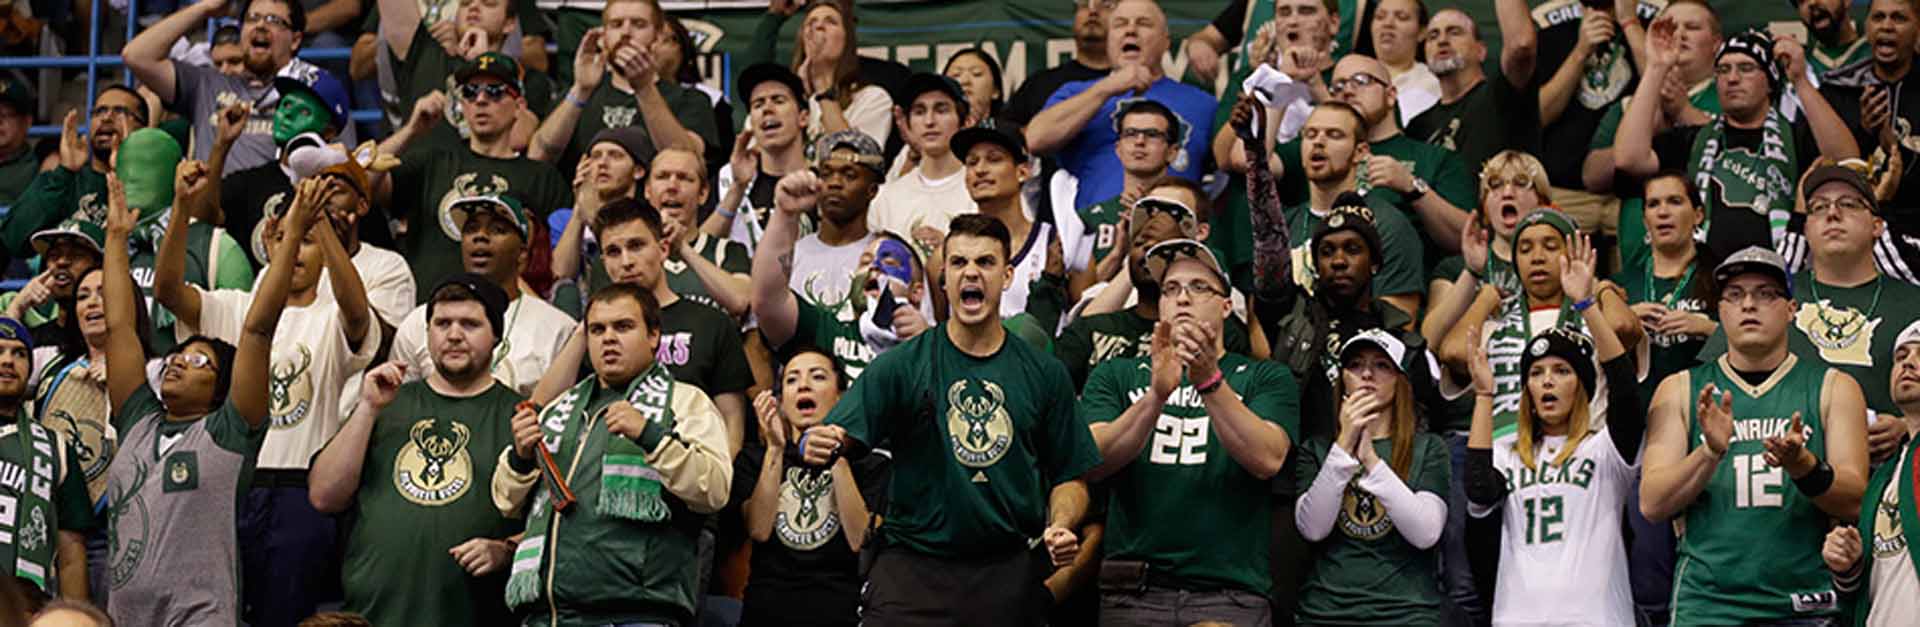 Milwaukee Bucks Fans | Sports Law | Sport$Biz